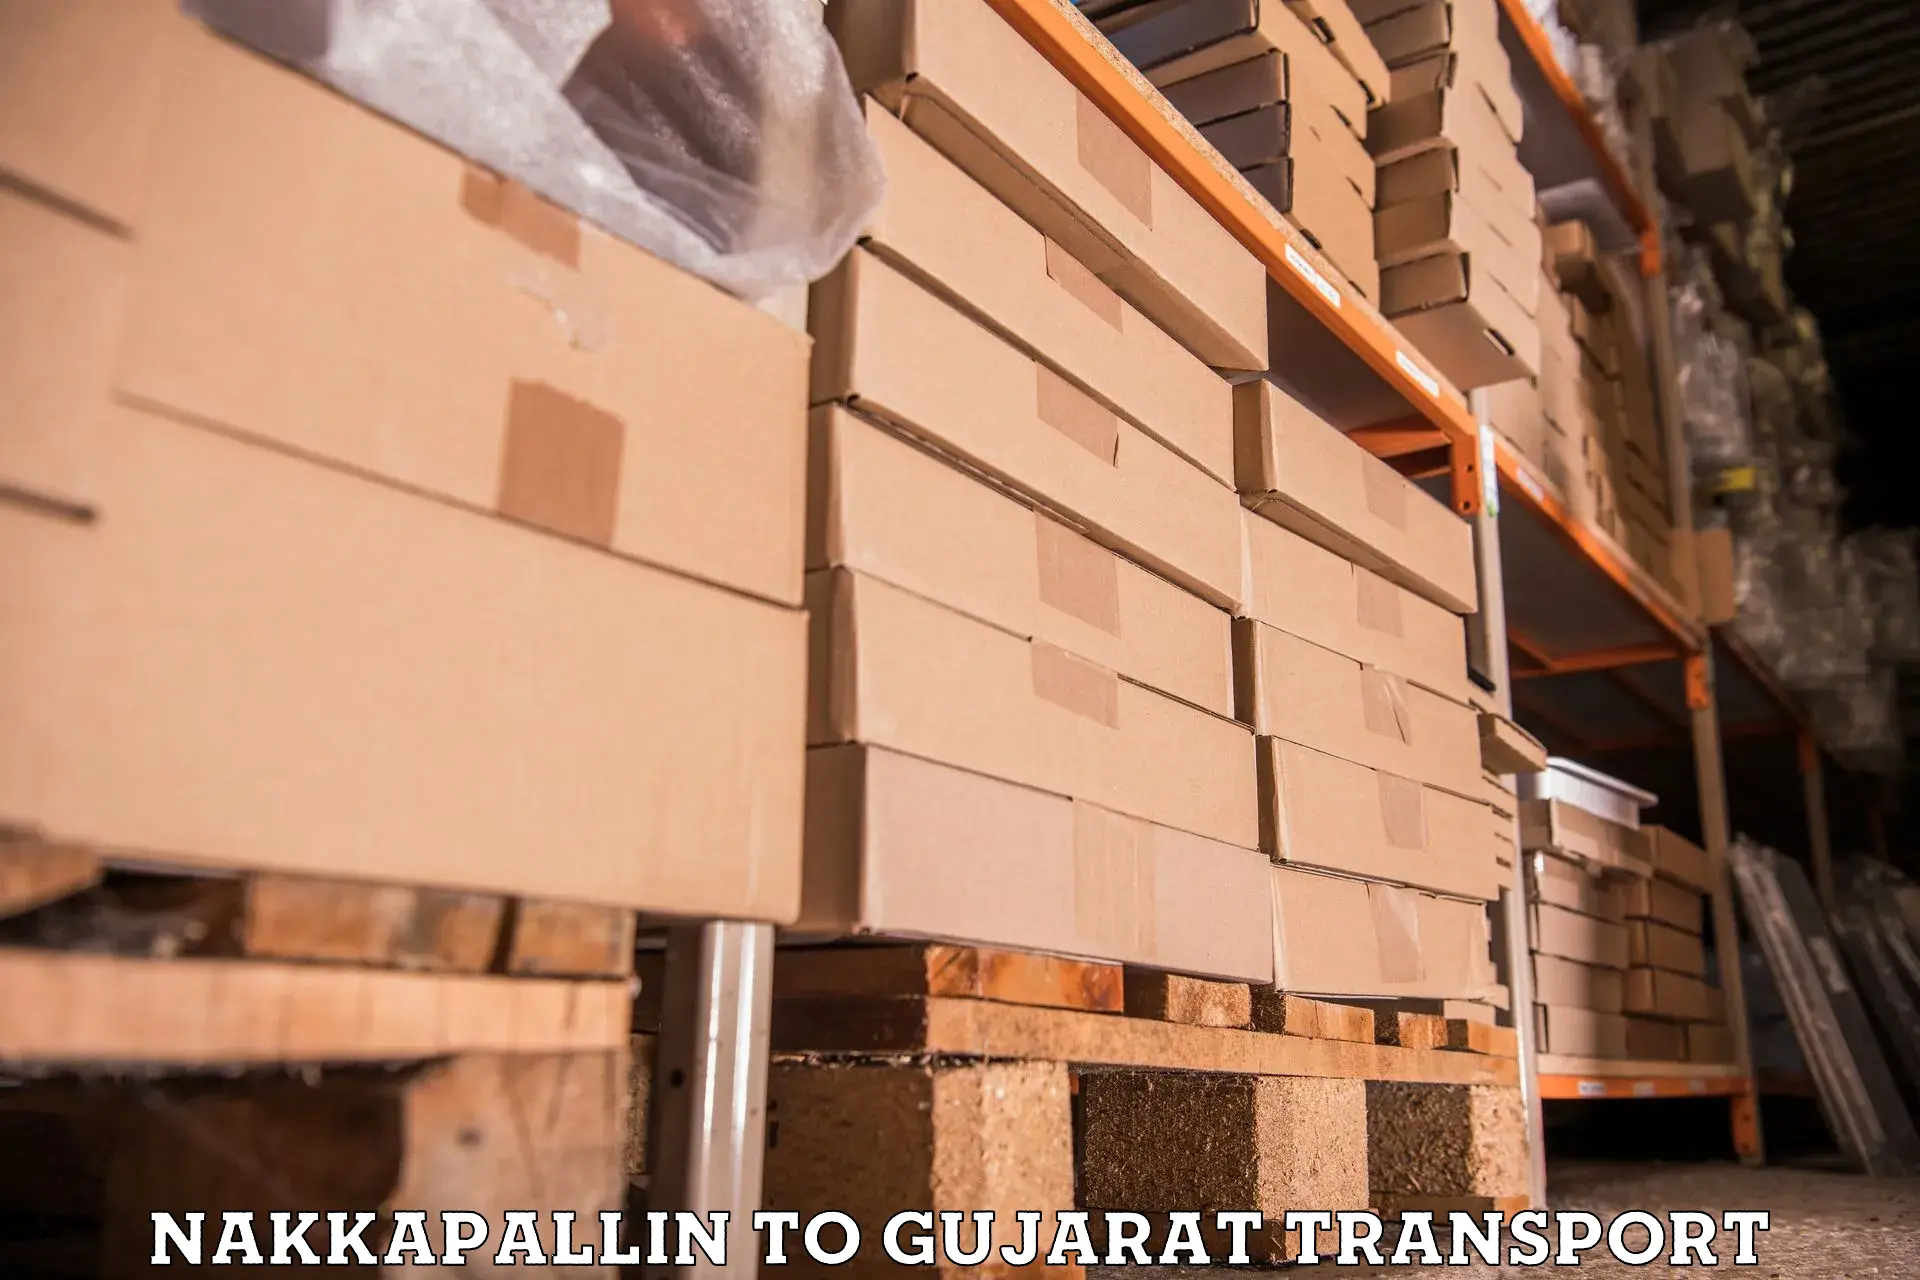 Bike transport service Nakkapallin to Gujarat